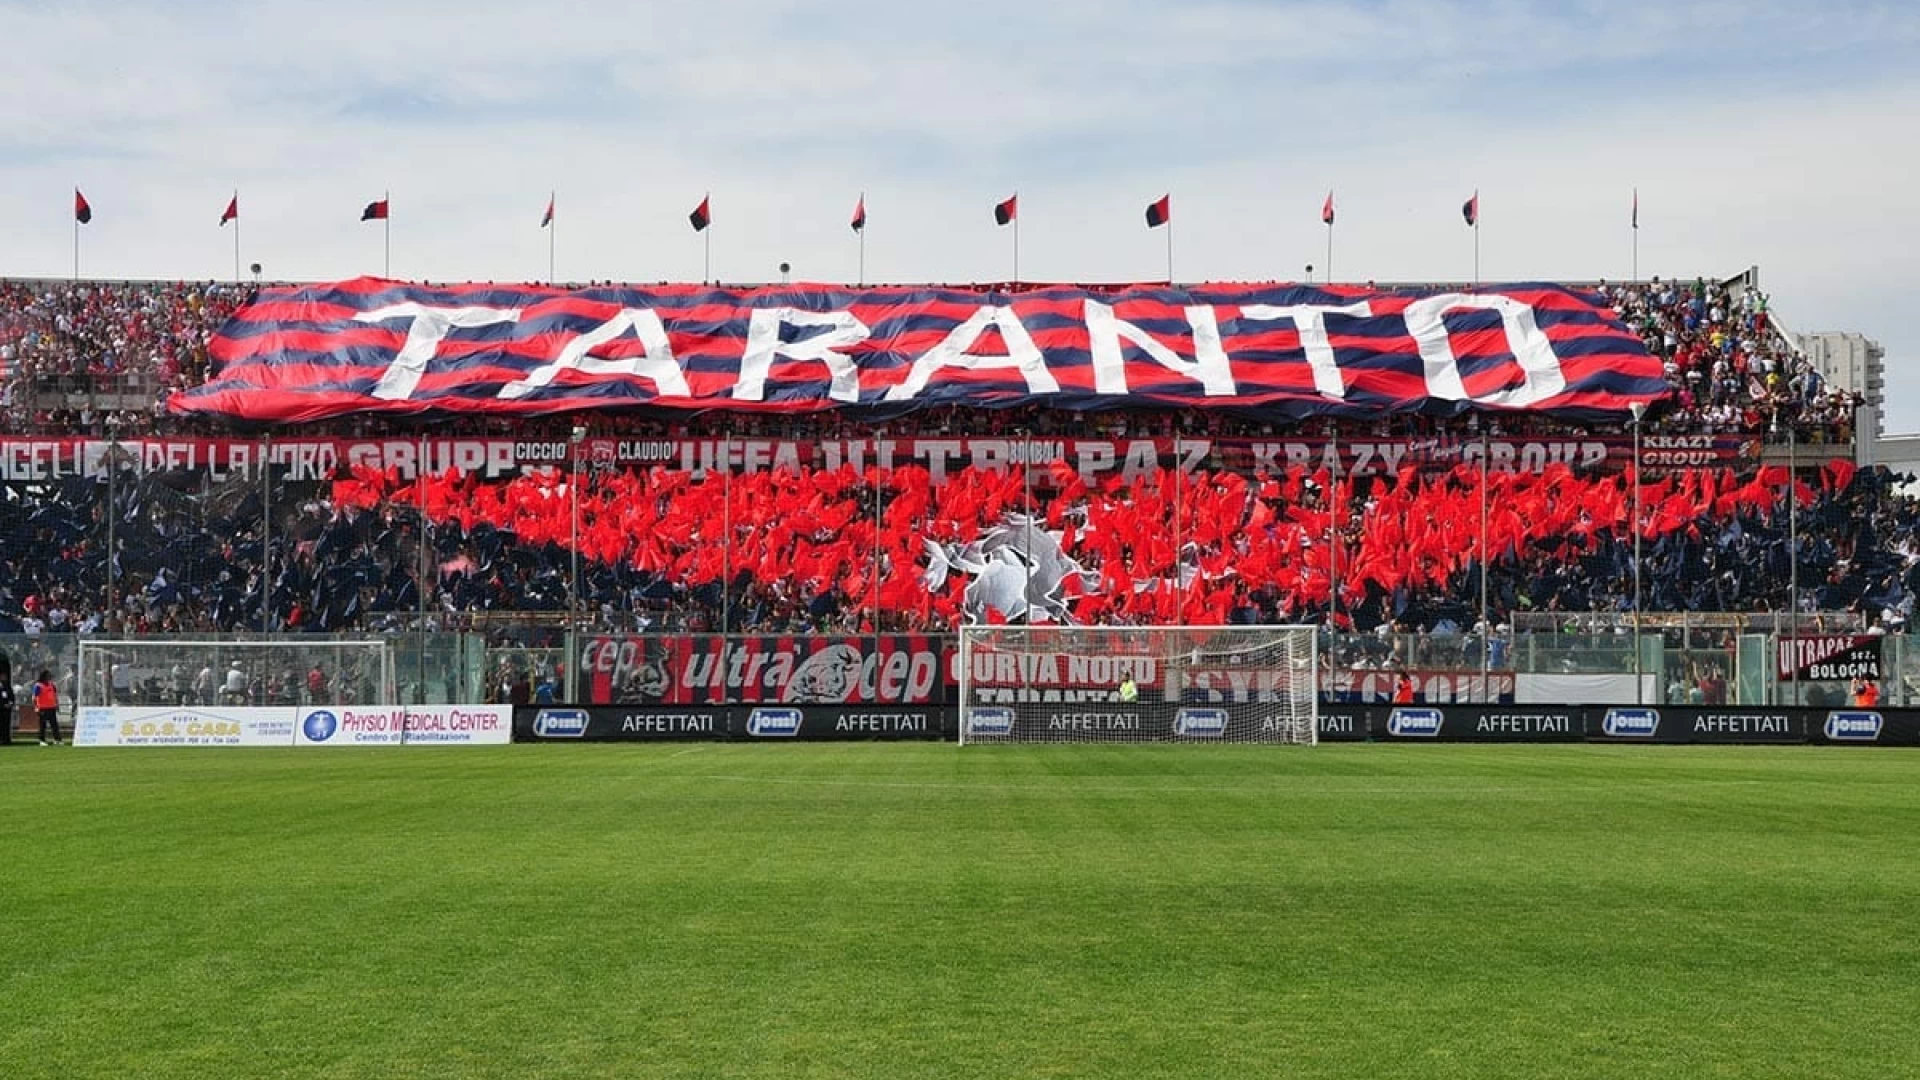 Il Taranto Calcio disputerà le gare casalinghe del campionato di Lega Pro a Castel Di Sangro. Approvata in giunta la delibera che concede l’utilizzo della strutture sportive alla societa’ pugliese.